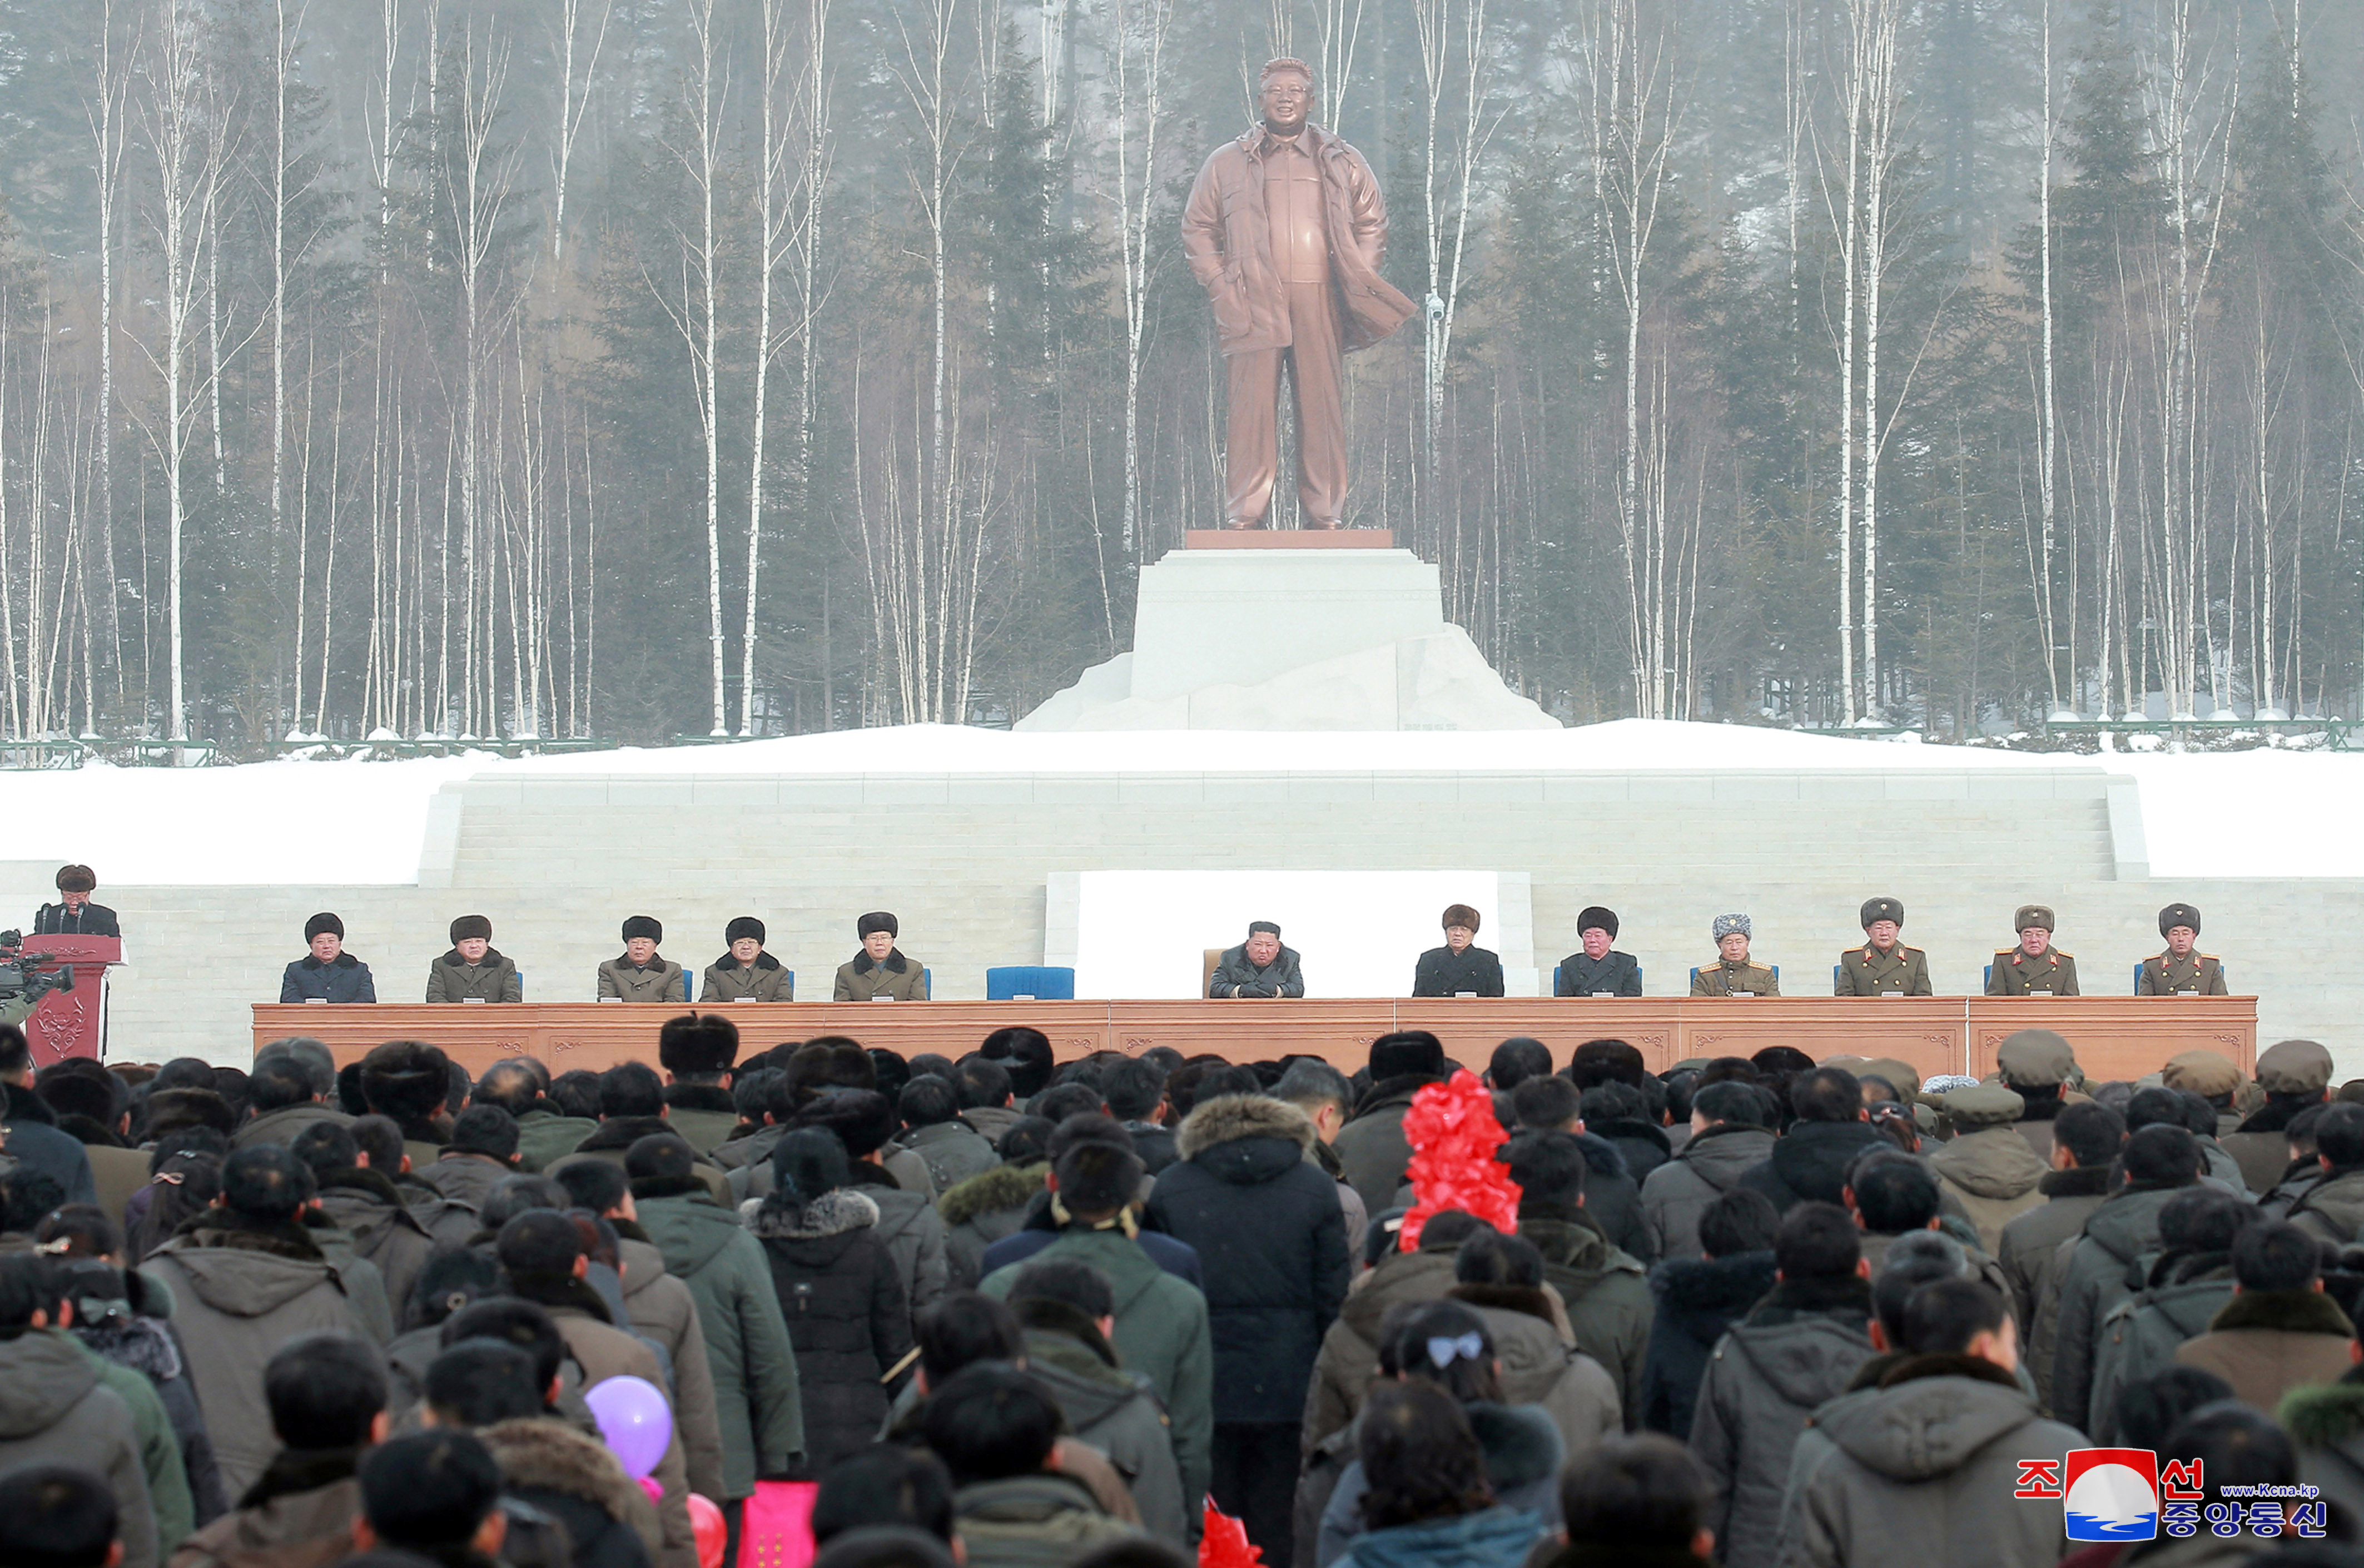 Kim Jong Un inaugura la ciudad nueva de Samjiyon en Corea del Norte (Fotos)